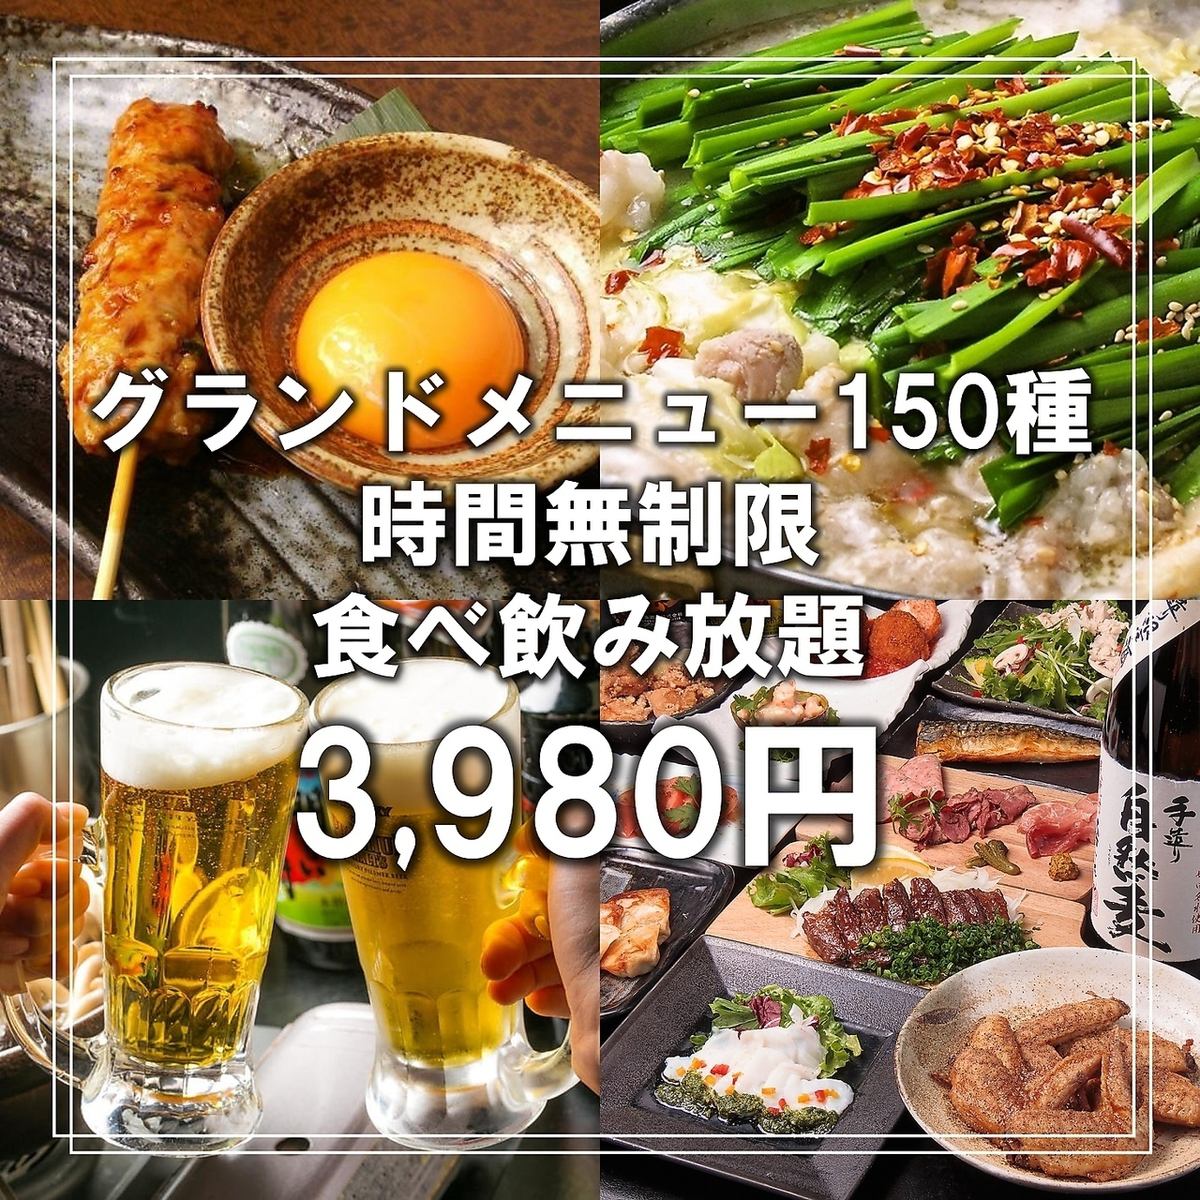 日吉商店グランドメニュー150品食べ飲み放題コース 3,980円